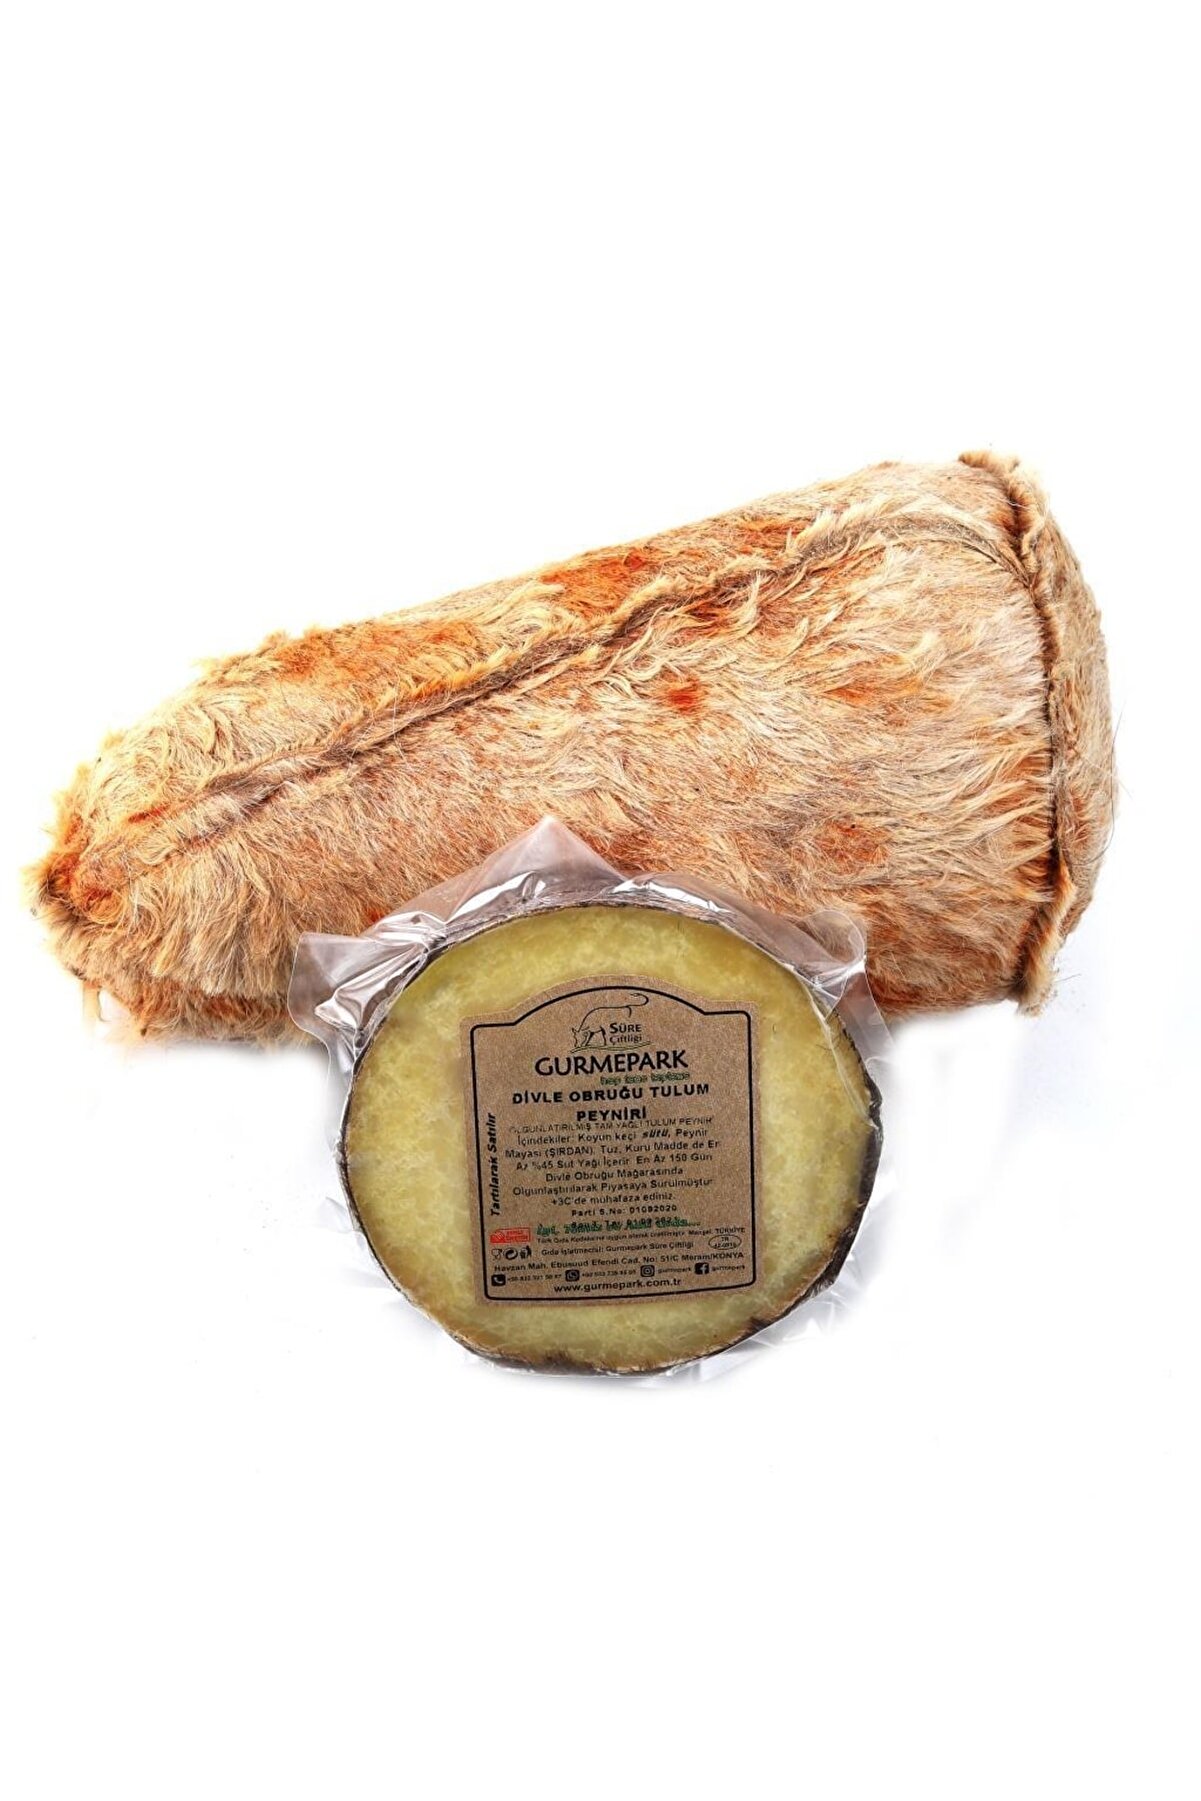 Gurmepark Karaman Divle Obruk Tulum (yeni Sezon) Koyun Keçi Peyniri 1 Kg Orjinal Sertifikalı